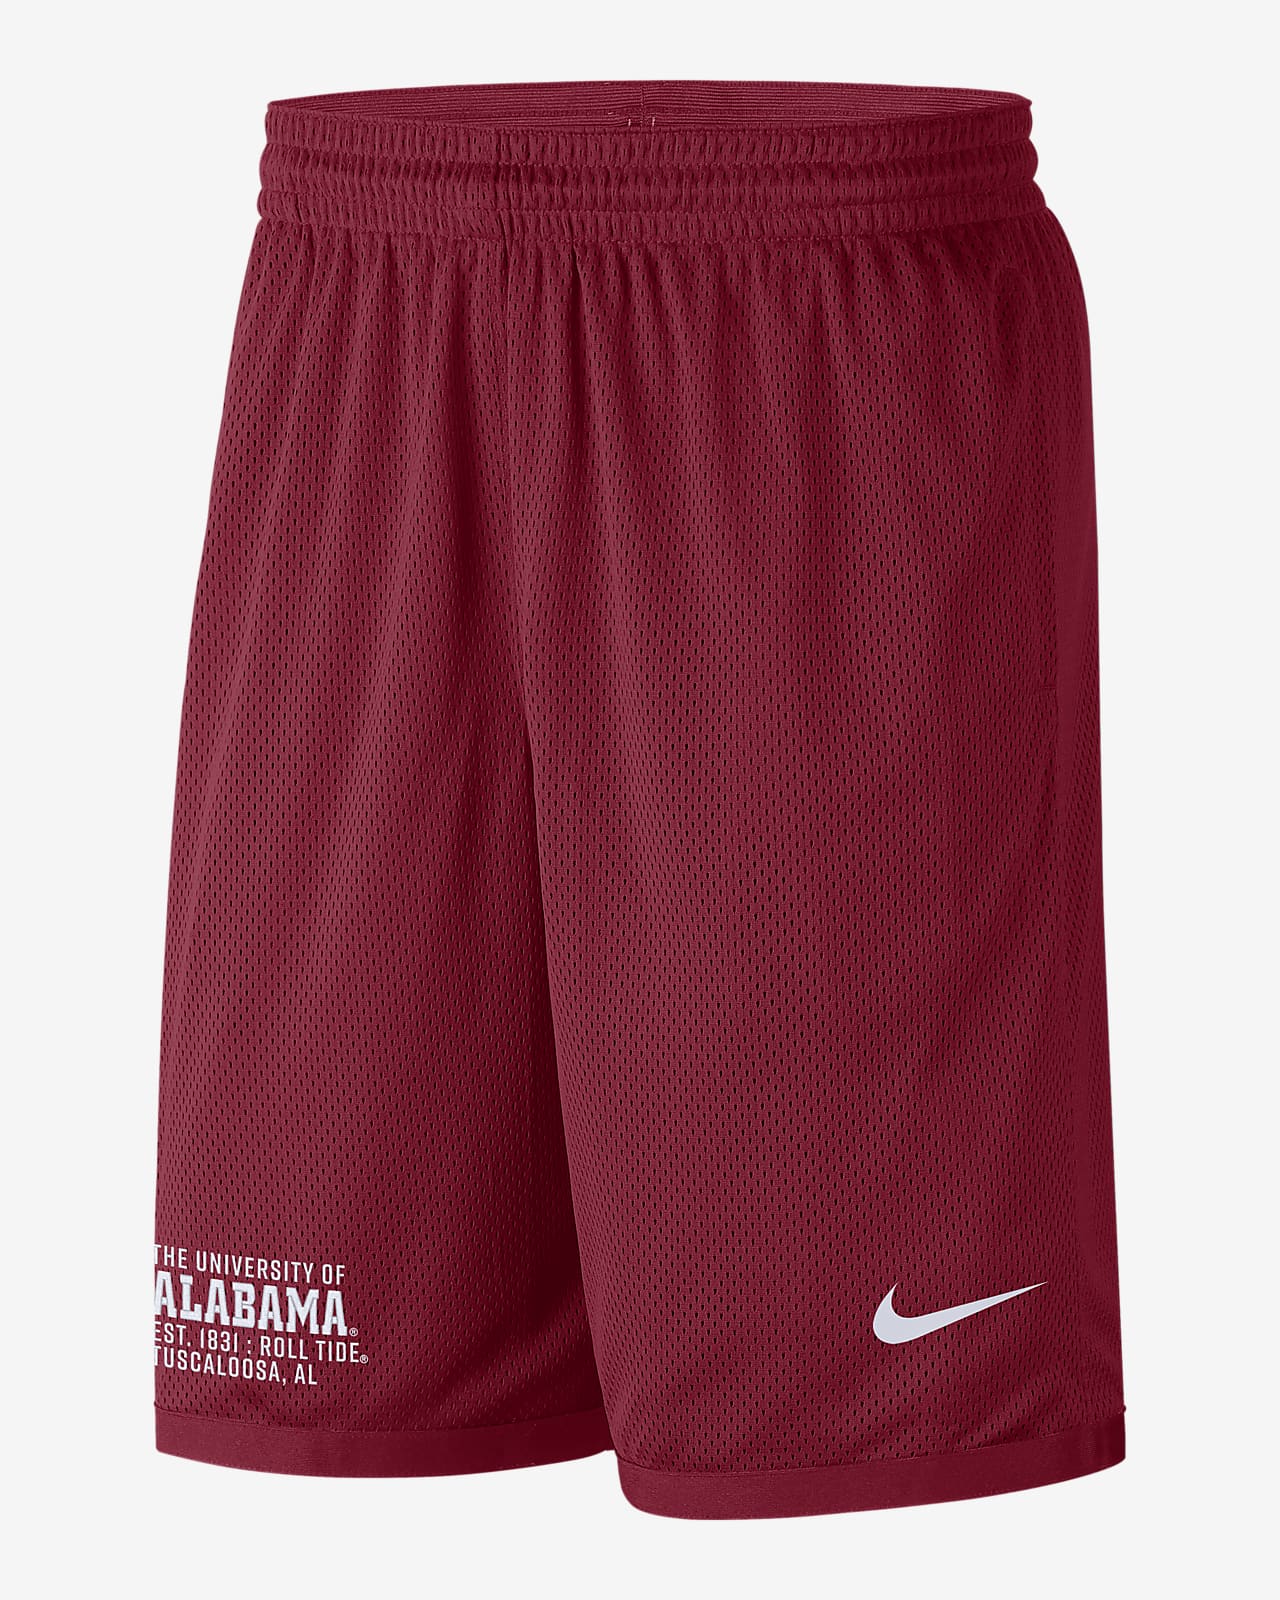 Nike College (Alabama) Men's Shorts.